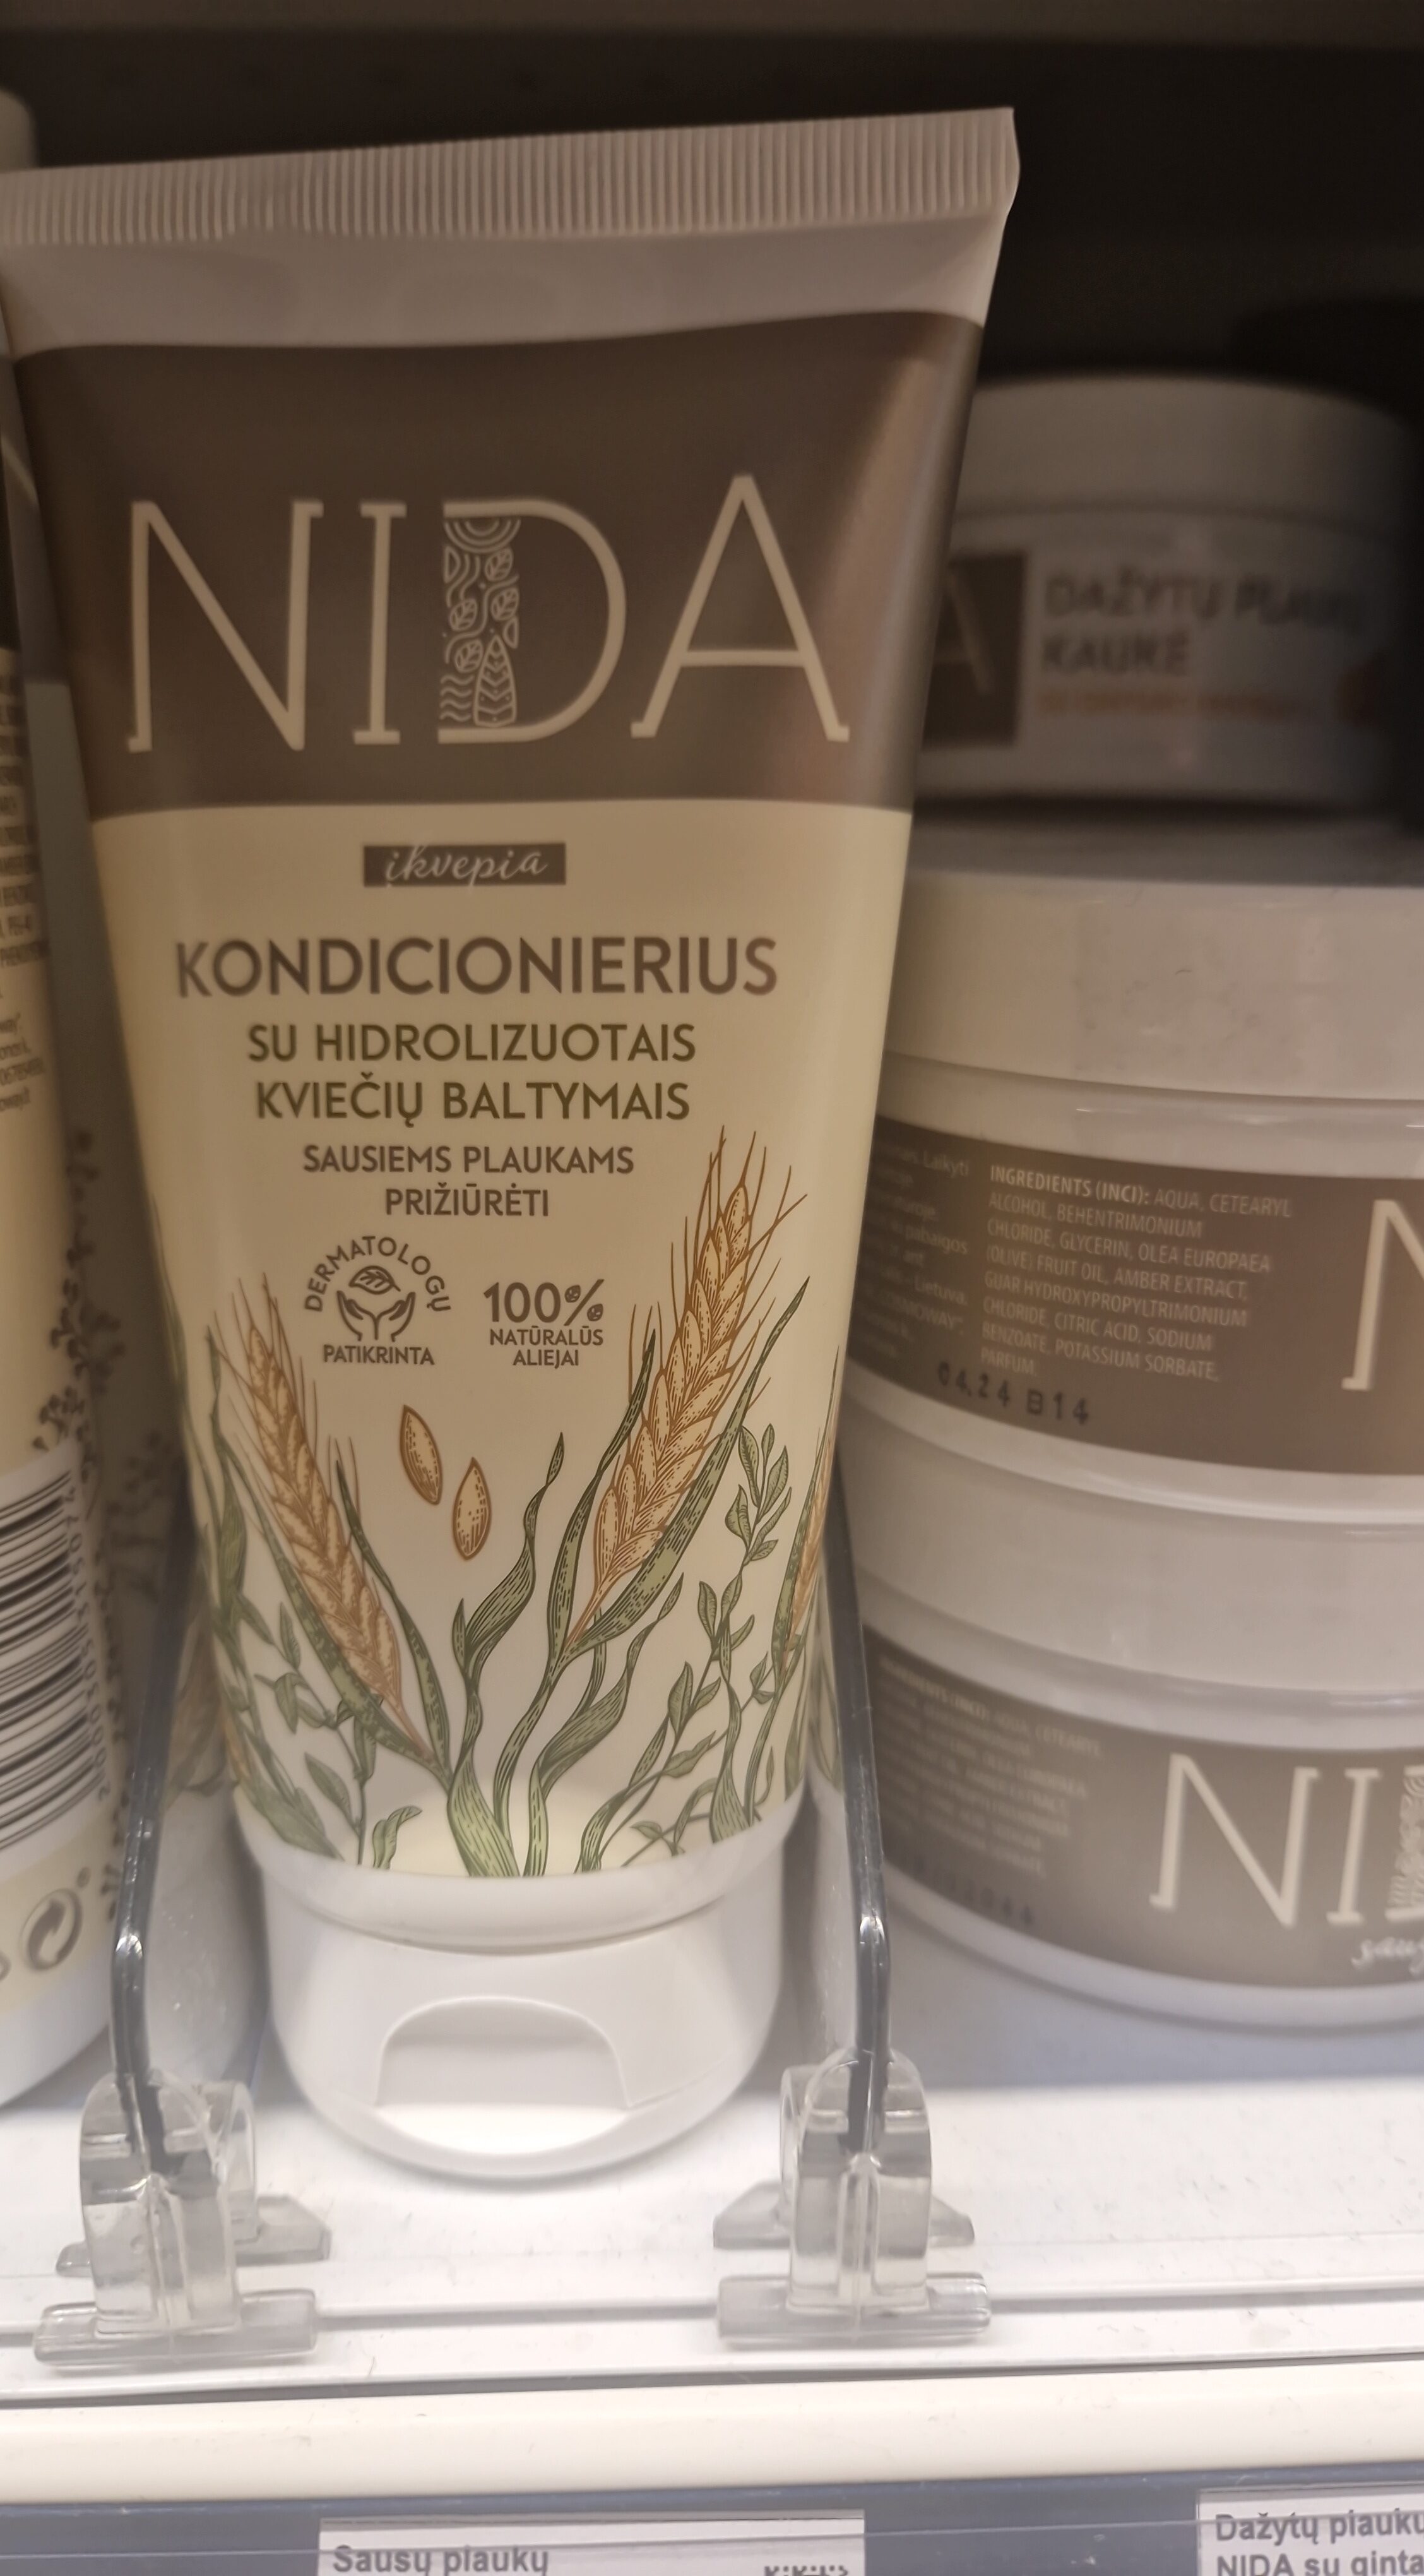 Sausų plaukų kondicionierius NIDA su kviečių baltymais - 製品 - lt